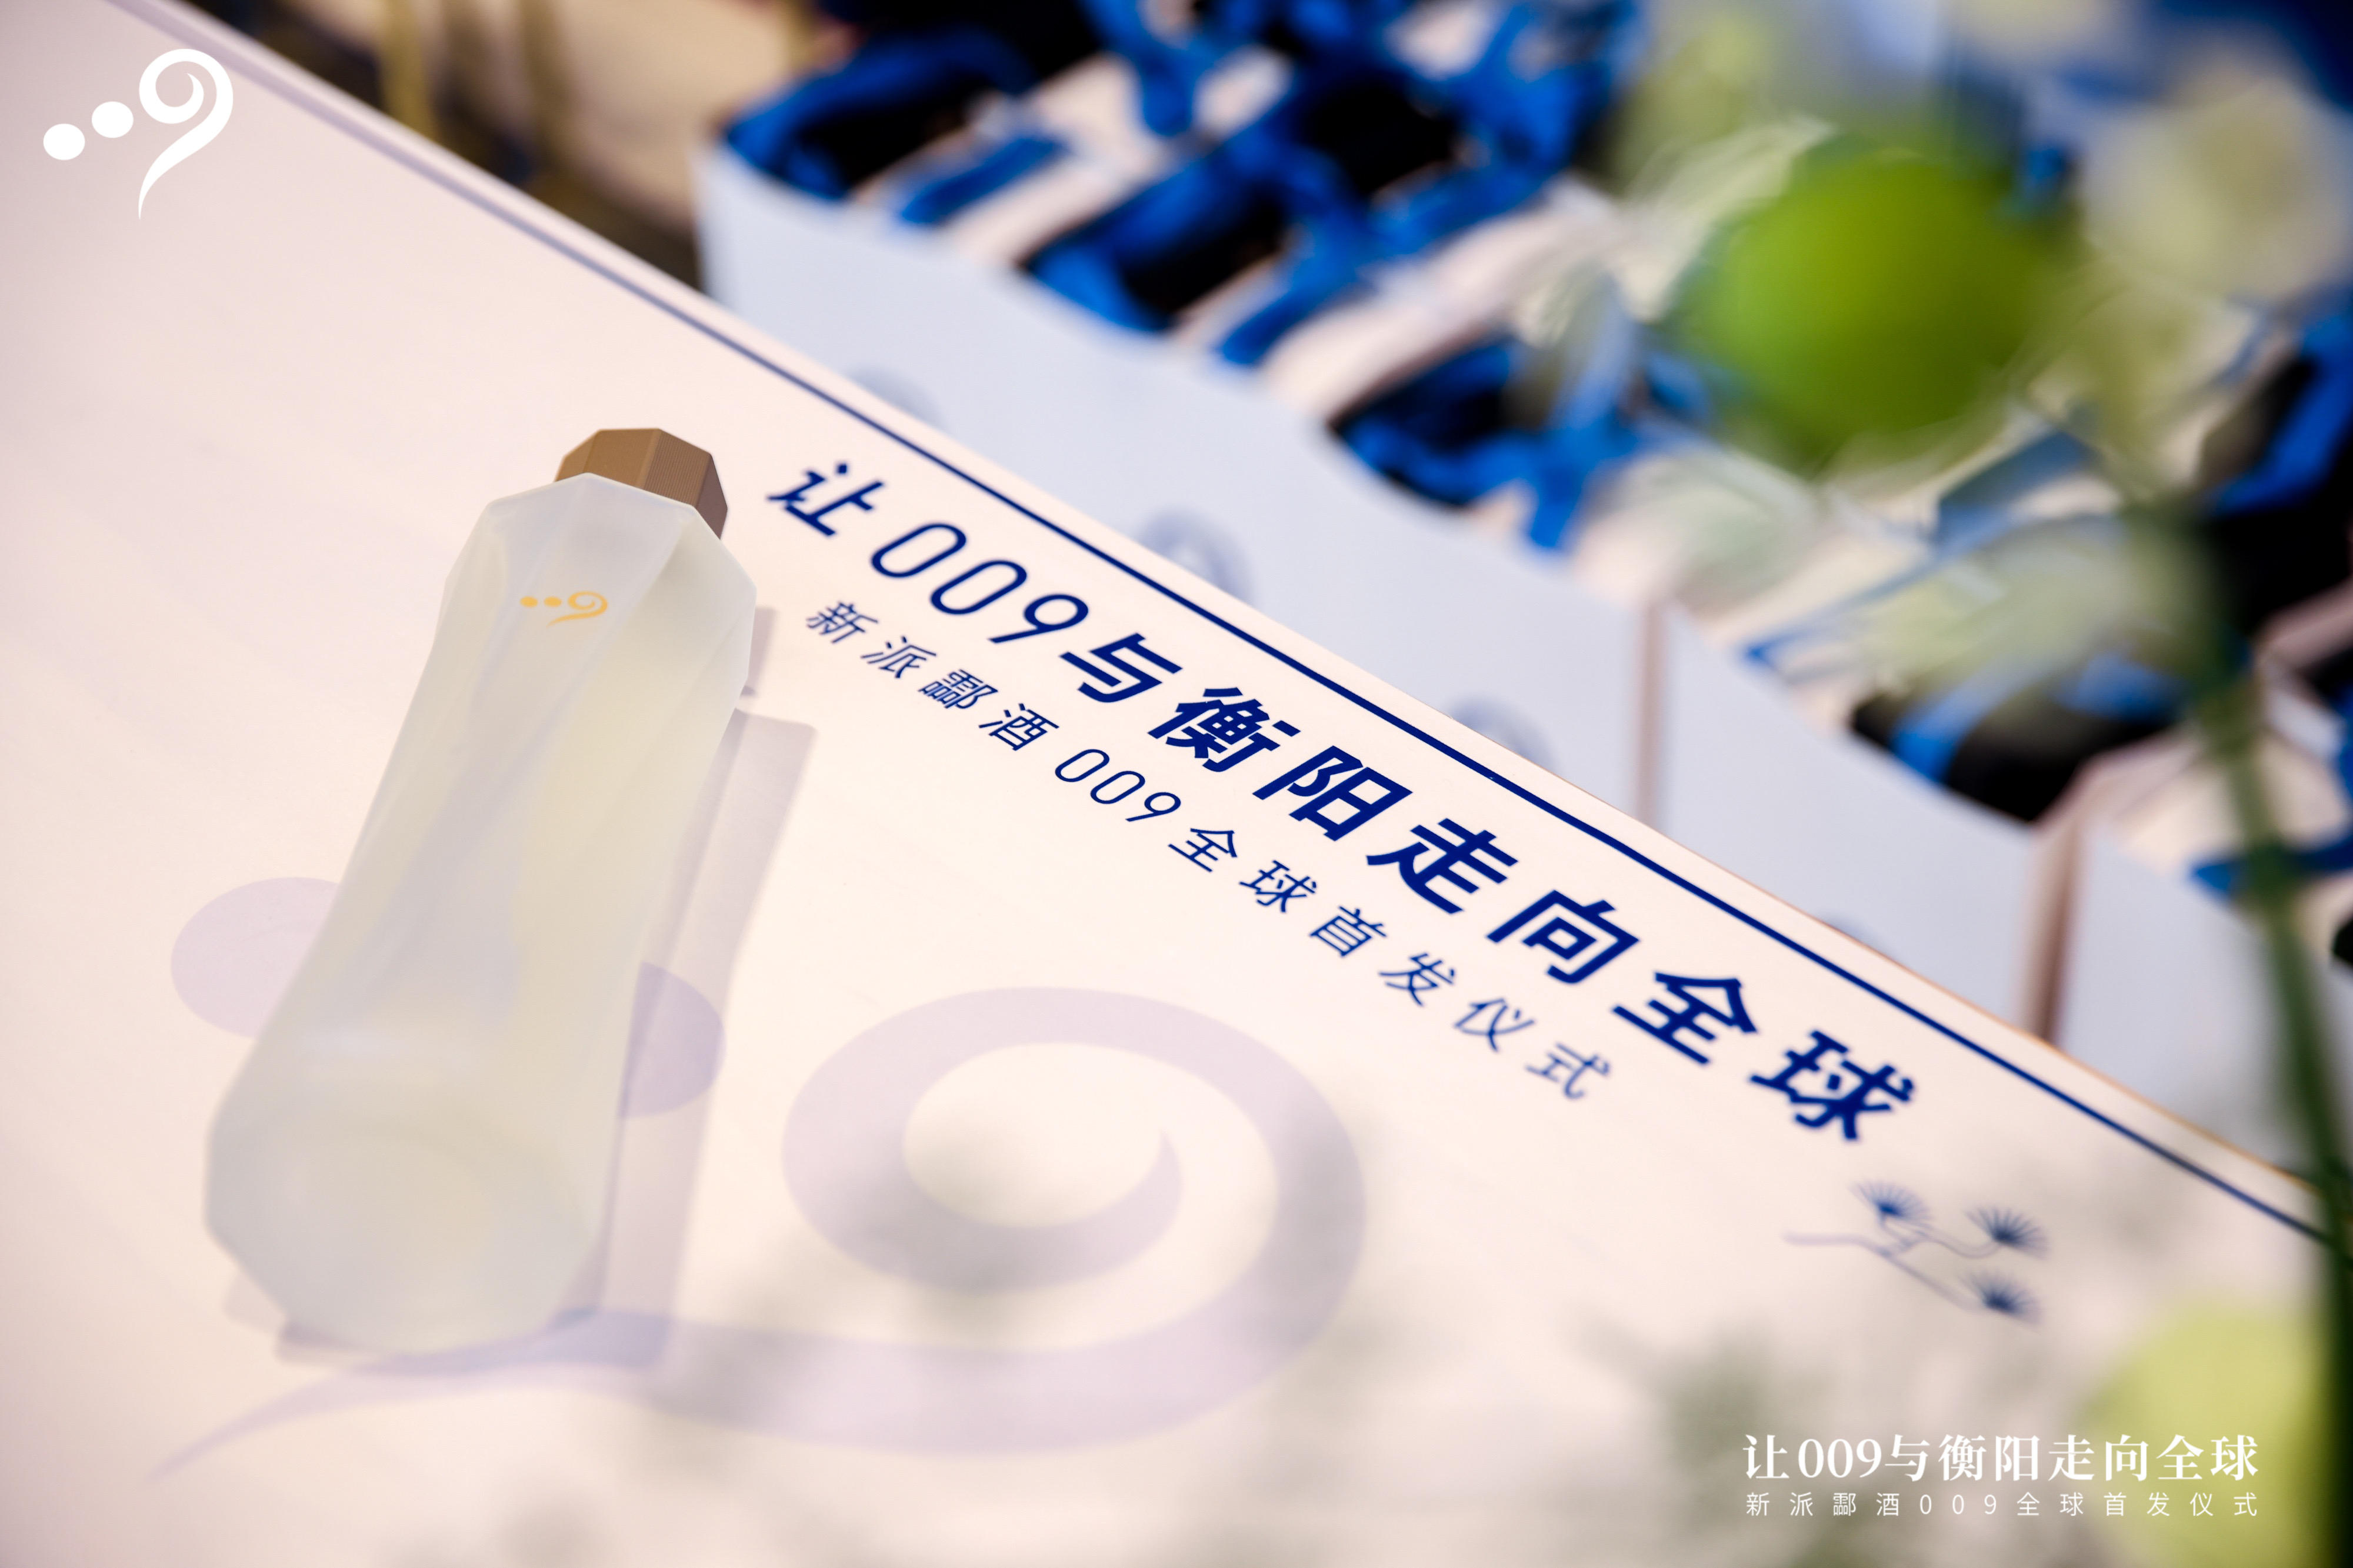 新派酃酒009，何以成为中国酒的发展新样本？